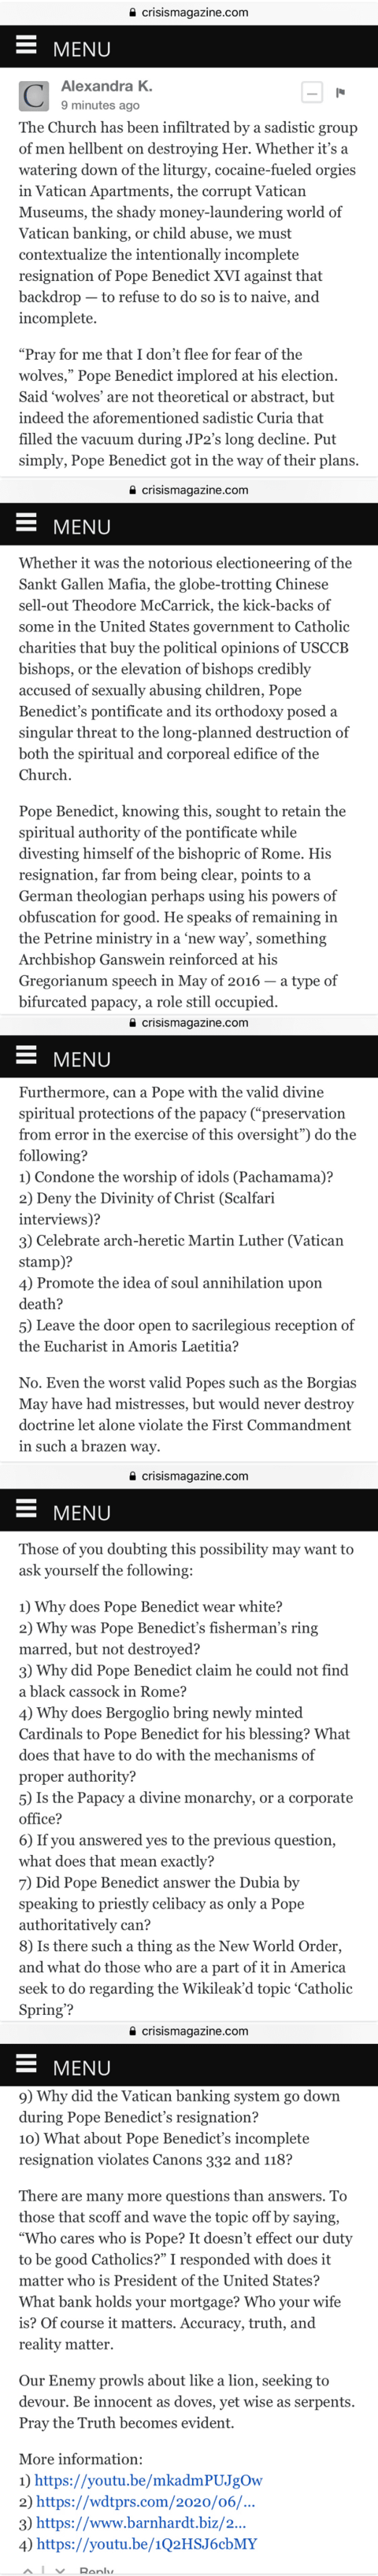 Ratzinger-Questions.png